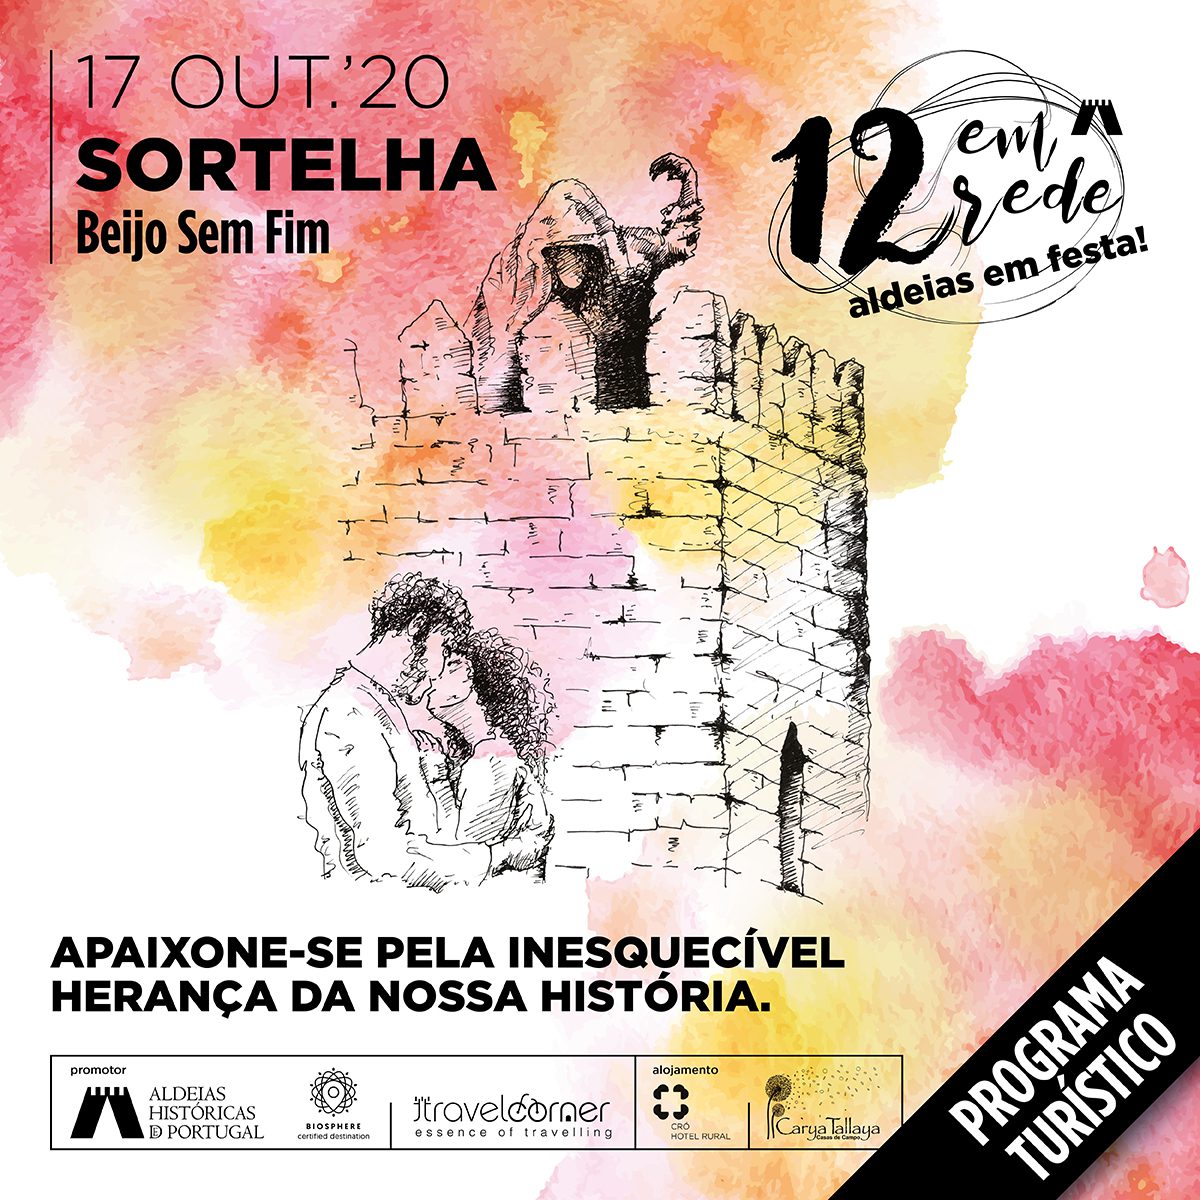 Lenda do Beijo sem Fim inspira dia de festa na Aldeia Histórica de Sortelha